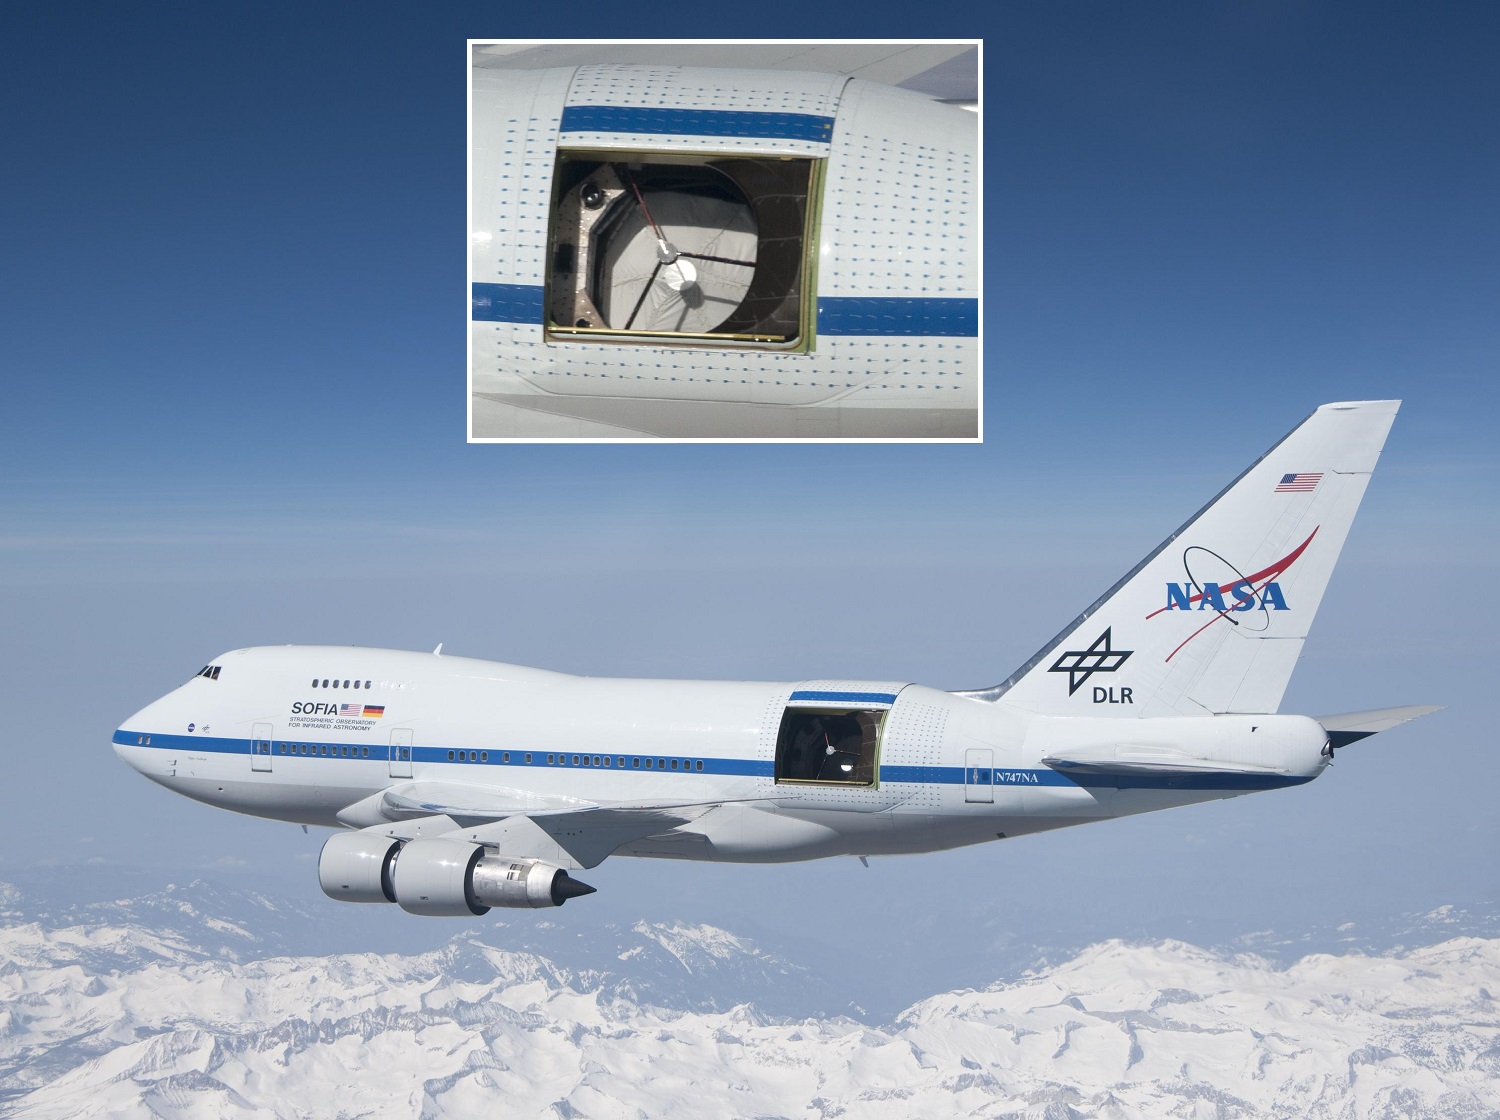 La NASA ha completato l'ultimo volo dell'esclusivo aereo stratosferico Boeing 747SP SOFIA, che ha osservato l'universo per otto anni.